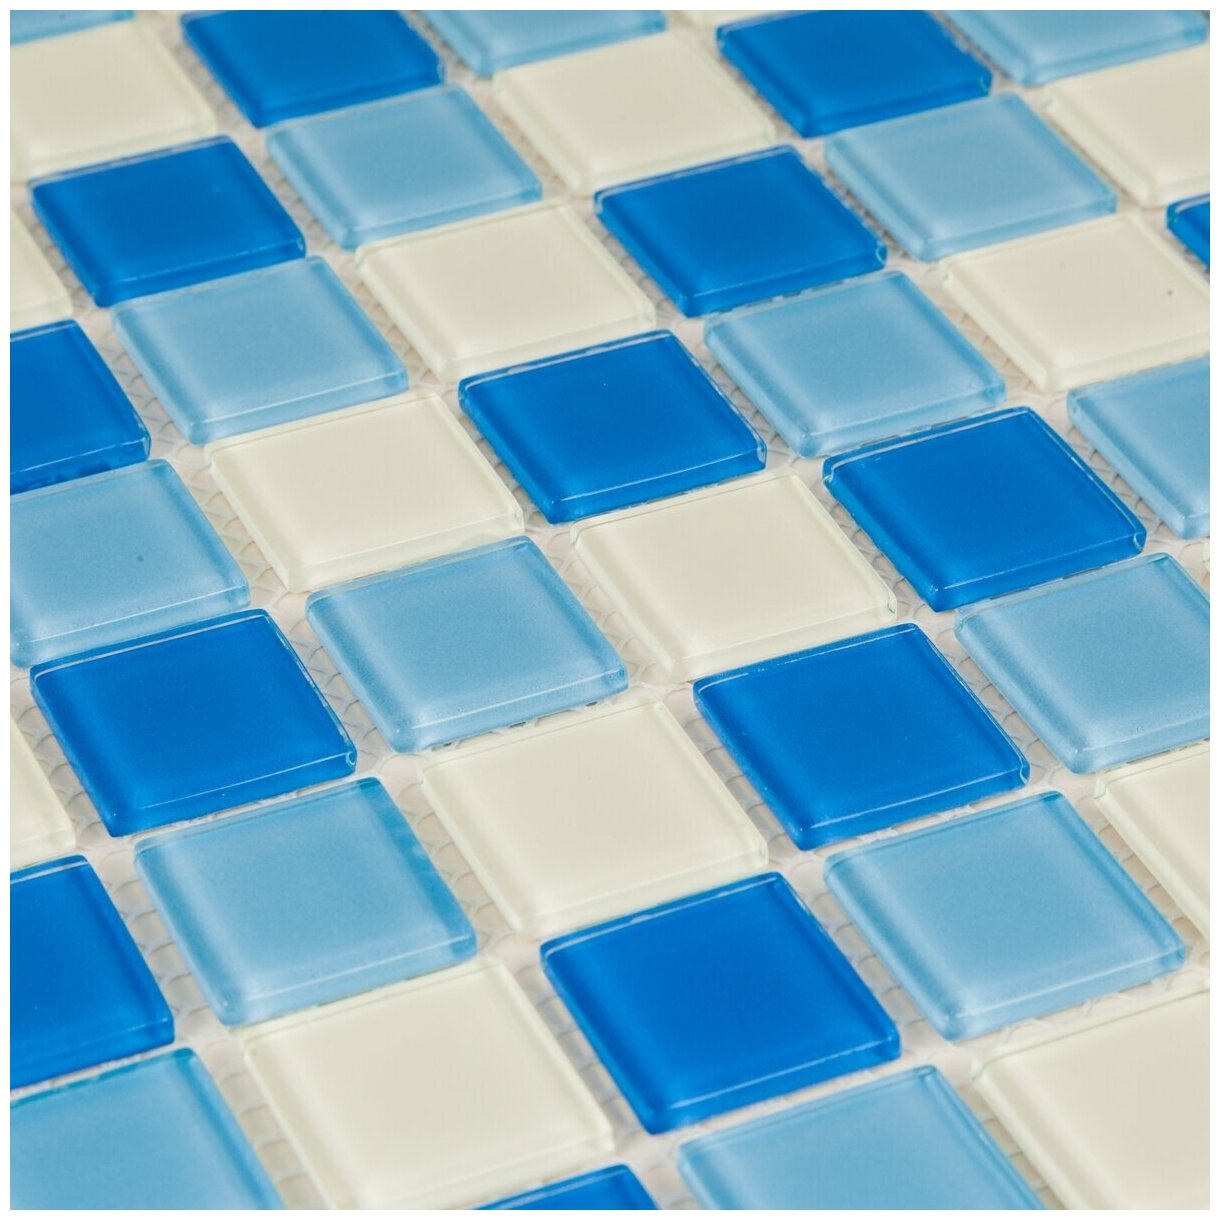 Стеклянная мозаика DAO-103-23-4. Размер 300х300мм. Толщина 4мм. Цвет синий/голубой. 1 лист. Площадь 0.09м2